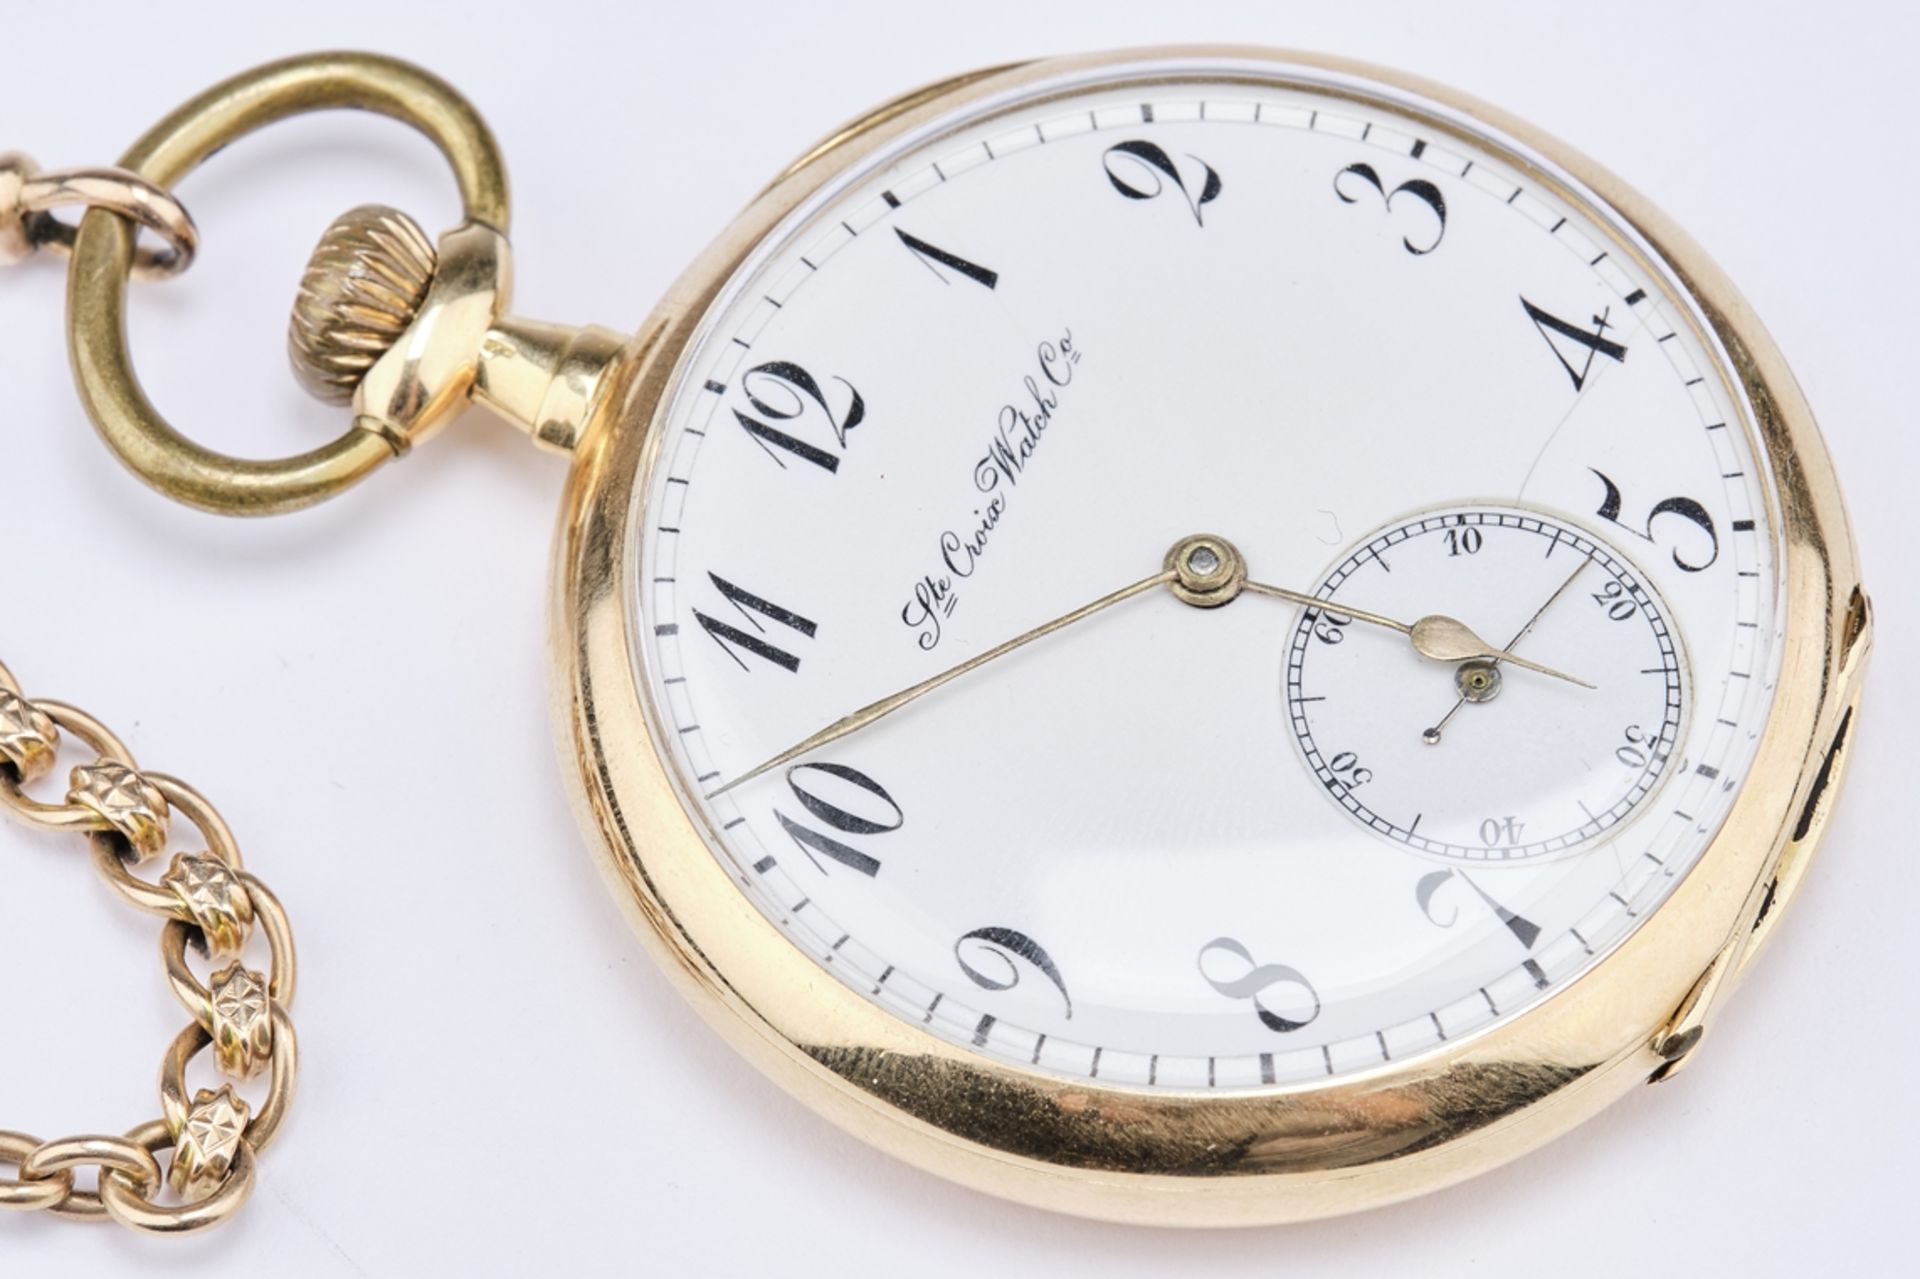 Taschenuhr, wohl England, Gehäuse GG 750, bez. "Ste Croix Watch Co", brutto ca. 72 g, an Uhrenkette - Bild 2 aus 3